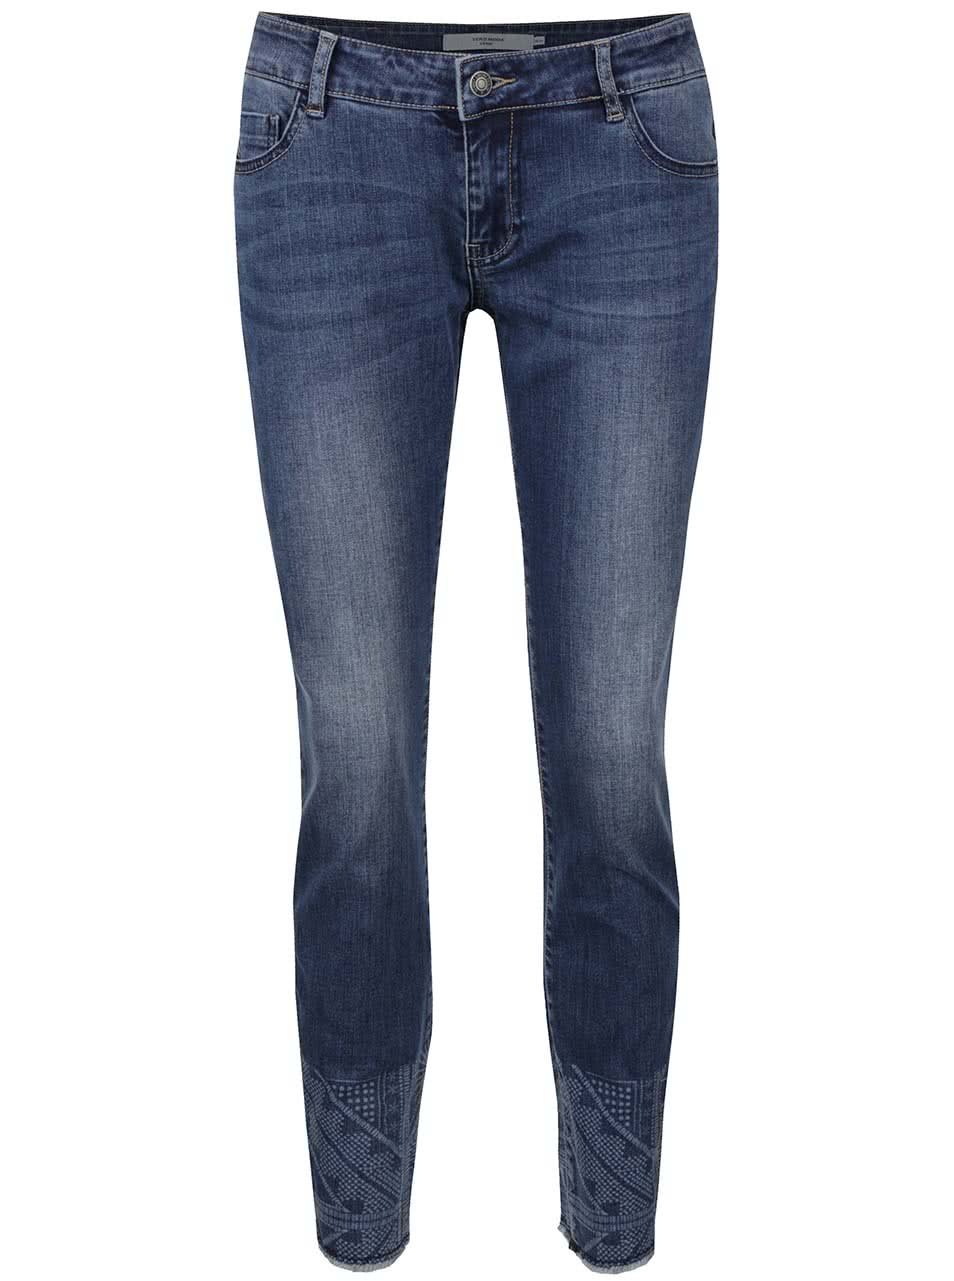 Modré slim fit džíny se vzorovanými detaily Vero Moda Five